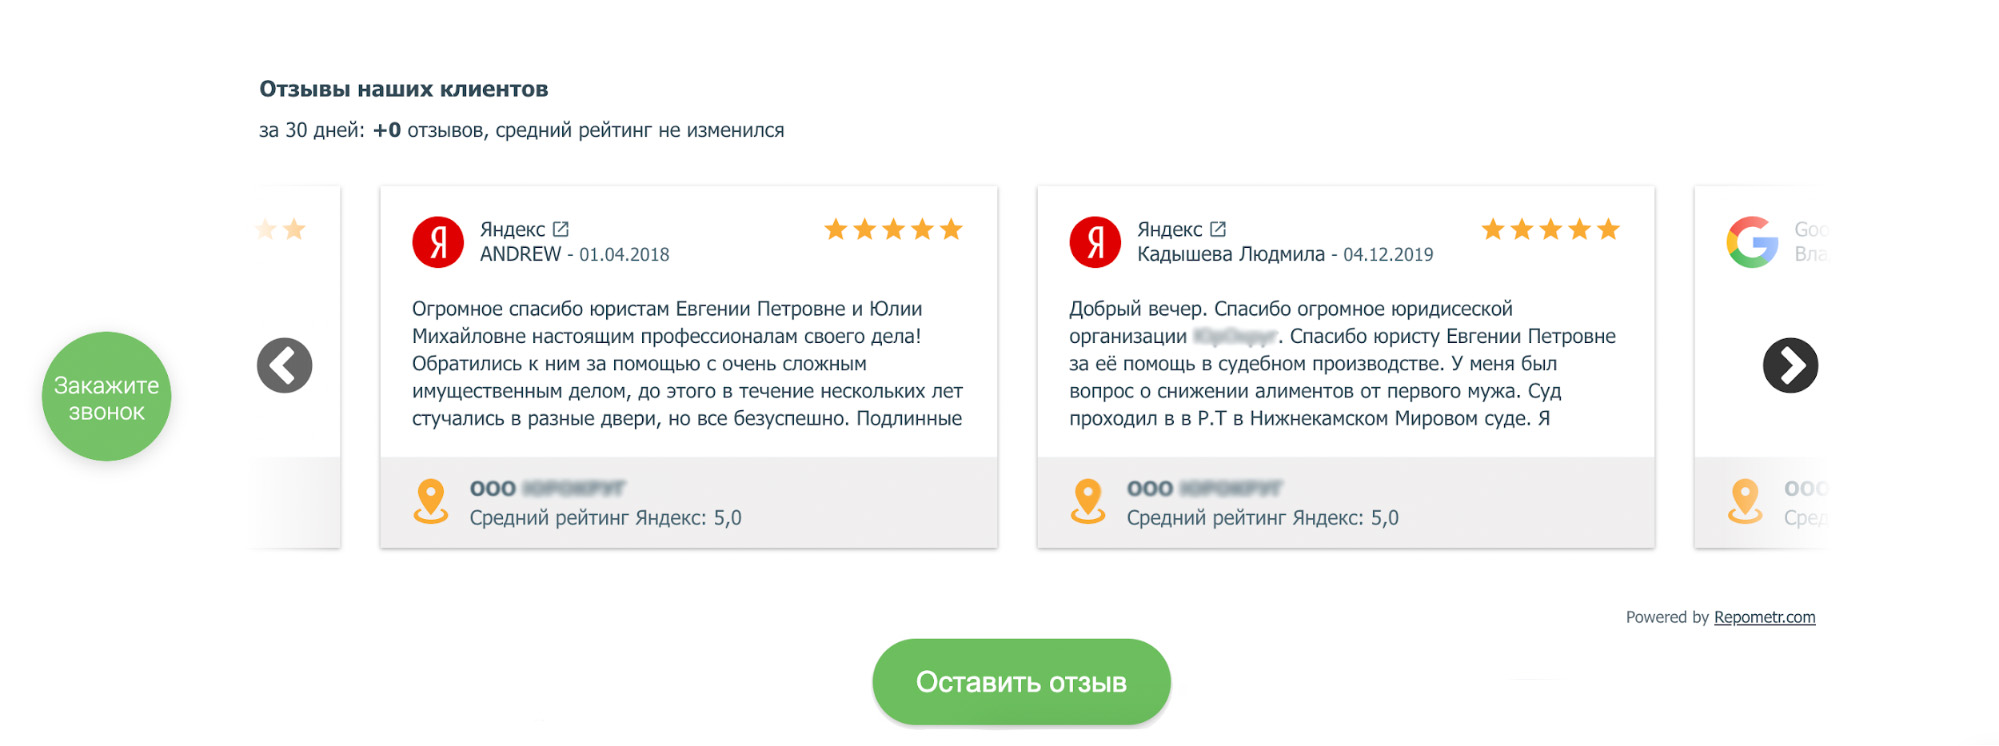 Геореклама: как продвигать компанию на Яндекс.Картах - работа с отзывами